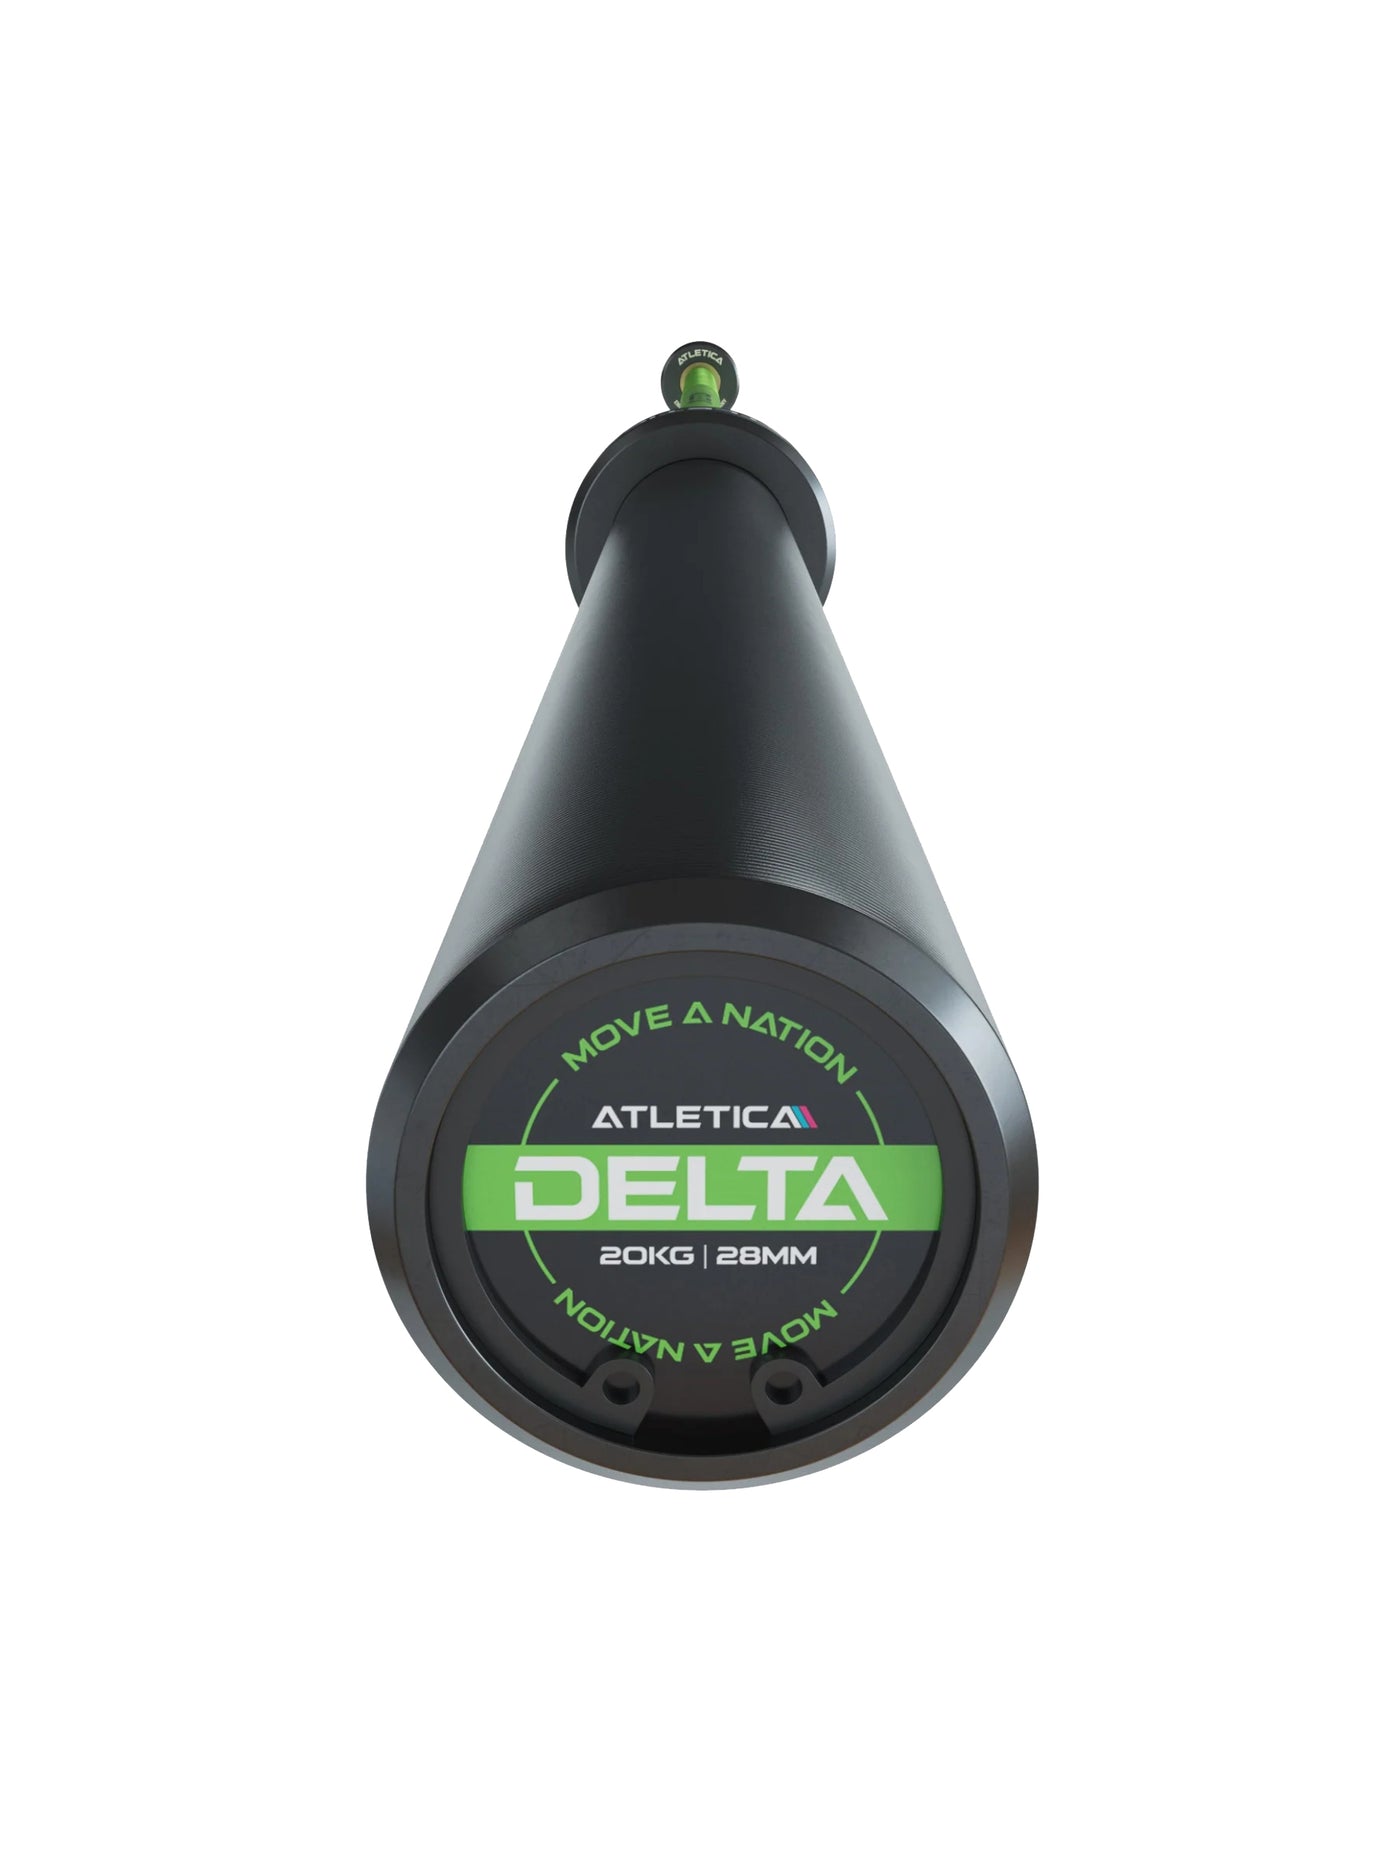 Delta Set: Delta Hybrid Stange| 75kg Hantelscheiben | Alu-Hantelverschlüsse | Für Gewichtheben, Powerlifting und CrossFit | Ø 50mm, #delta-hybrid-barbell-farbe_electric-green